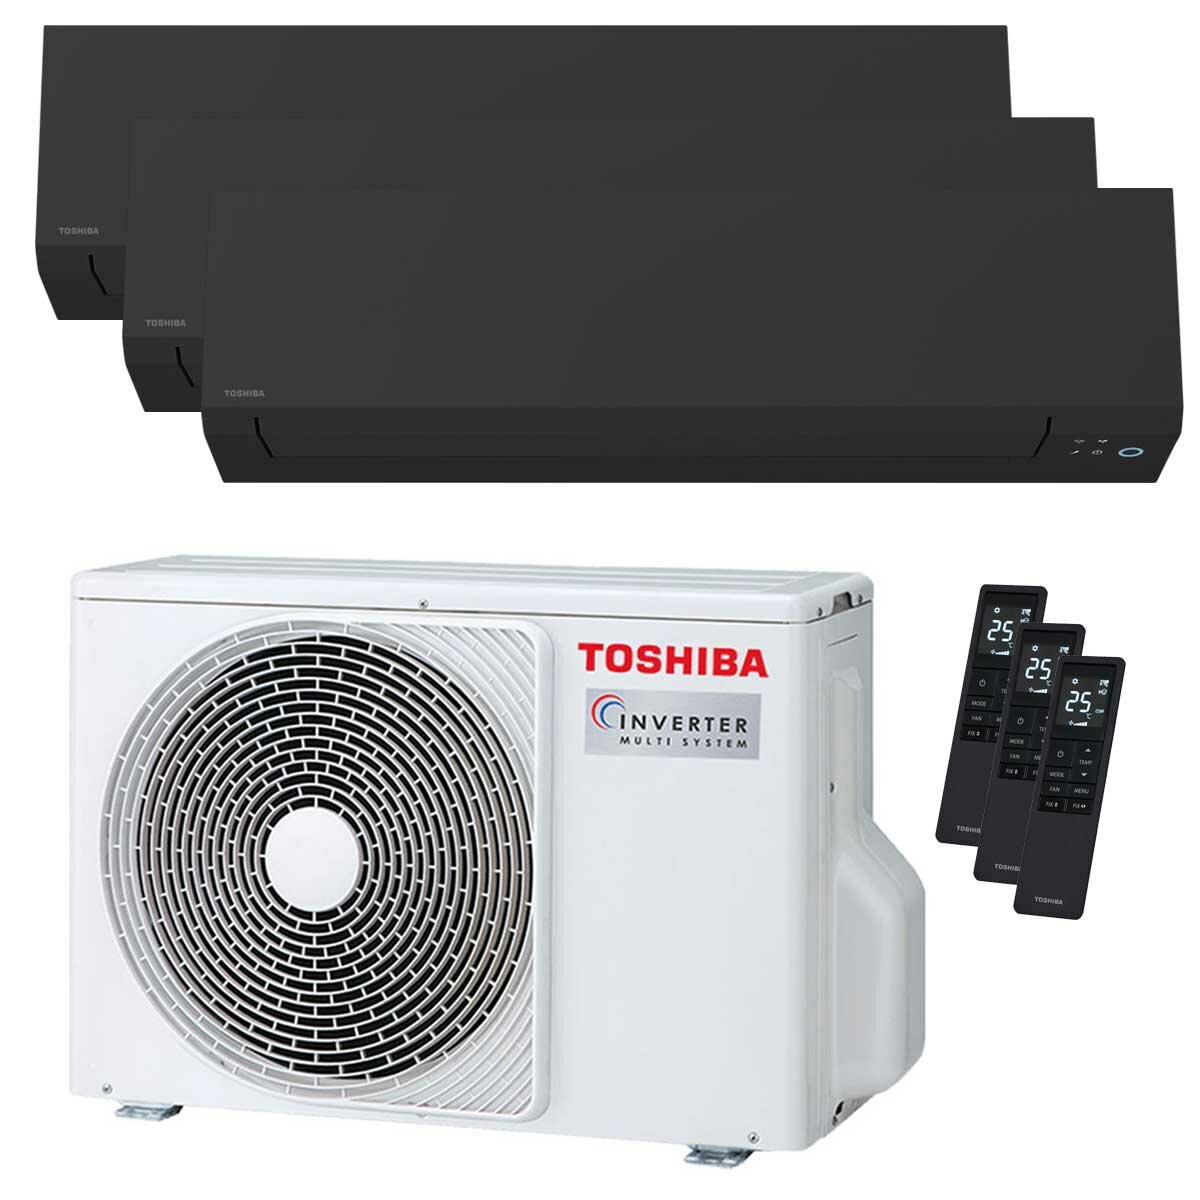 Toshiba SHORAI Edge Black climatiseur trial split 5000+7000+12000 BTU inverseur A+++ unité extérieure wifi 5,2 kW 